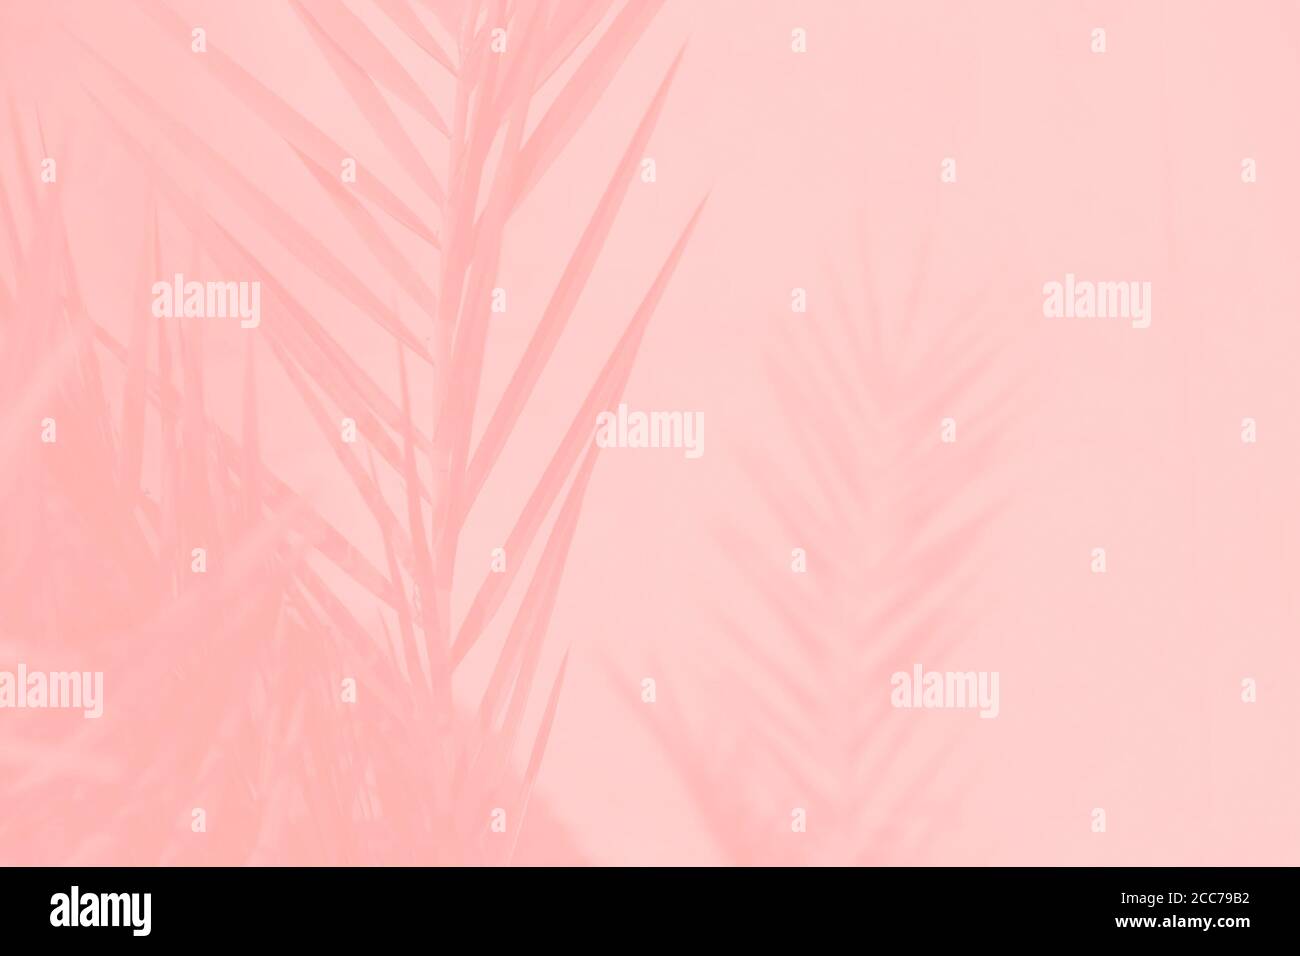 Lá cây dừa ngày màu hồng trên nền hồng nhạt: Một bức hình với sắc hồng tươi sáng của lá cây dừa, tạo nên không gian rực rỡ và lạ mắt. Chiếc ảnh này chắc chắn sẽ khiến bạn muốn ngâm mình trong không gian đầy màu sắc, năng động. Hãy xem ngay để khám phá tinh thần mới mẻ này!